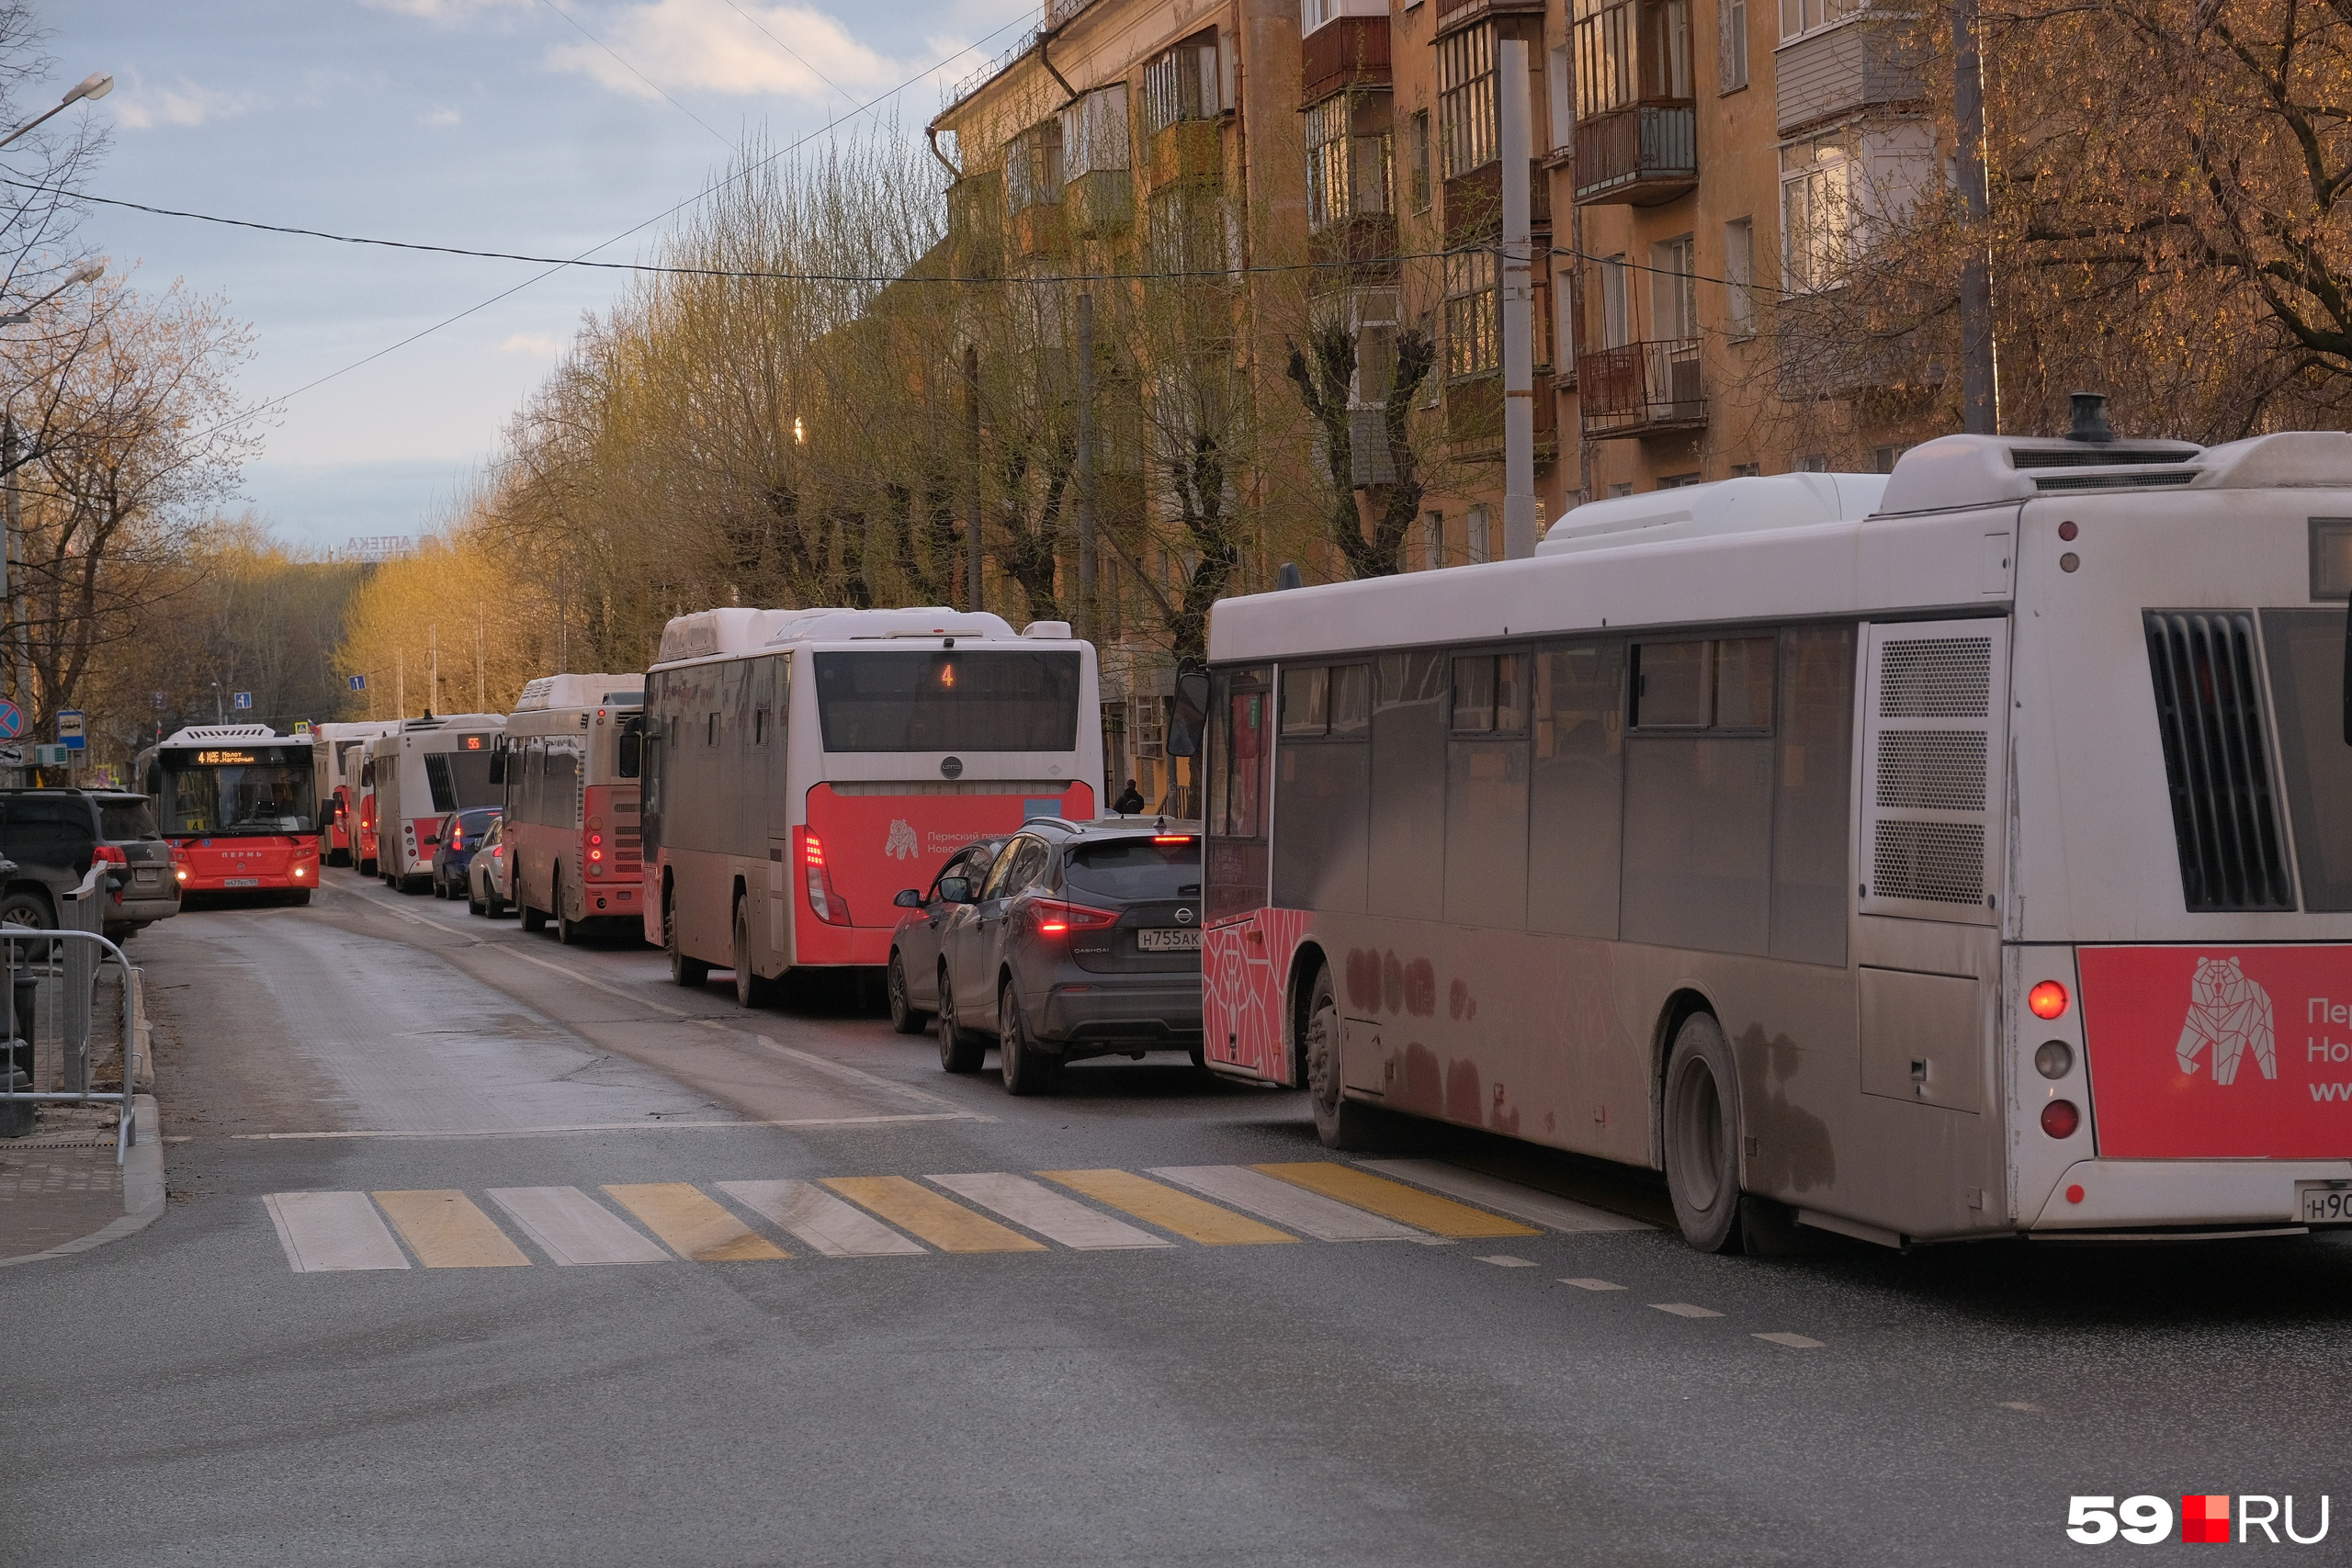 Транспорт Пермь. Автобус вид транспорта. Пермские автобусы. Транспорт Пермь трамвай.